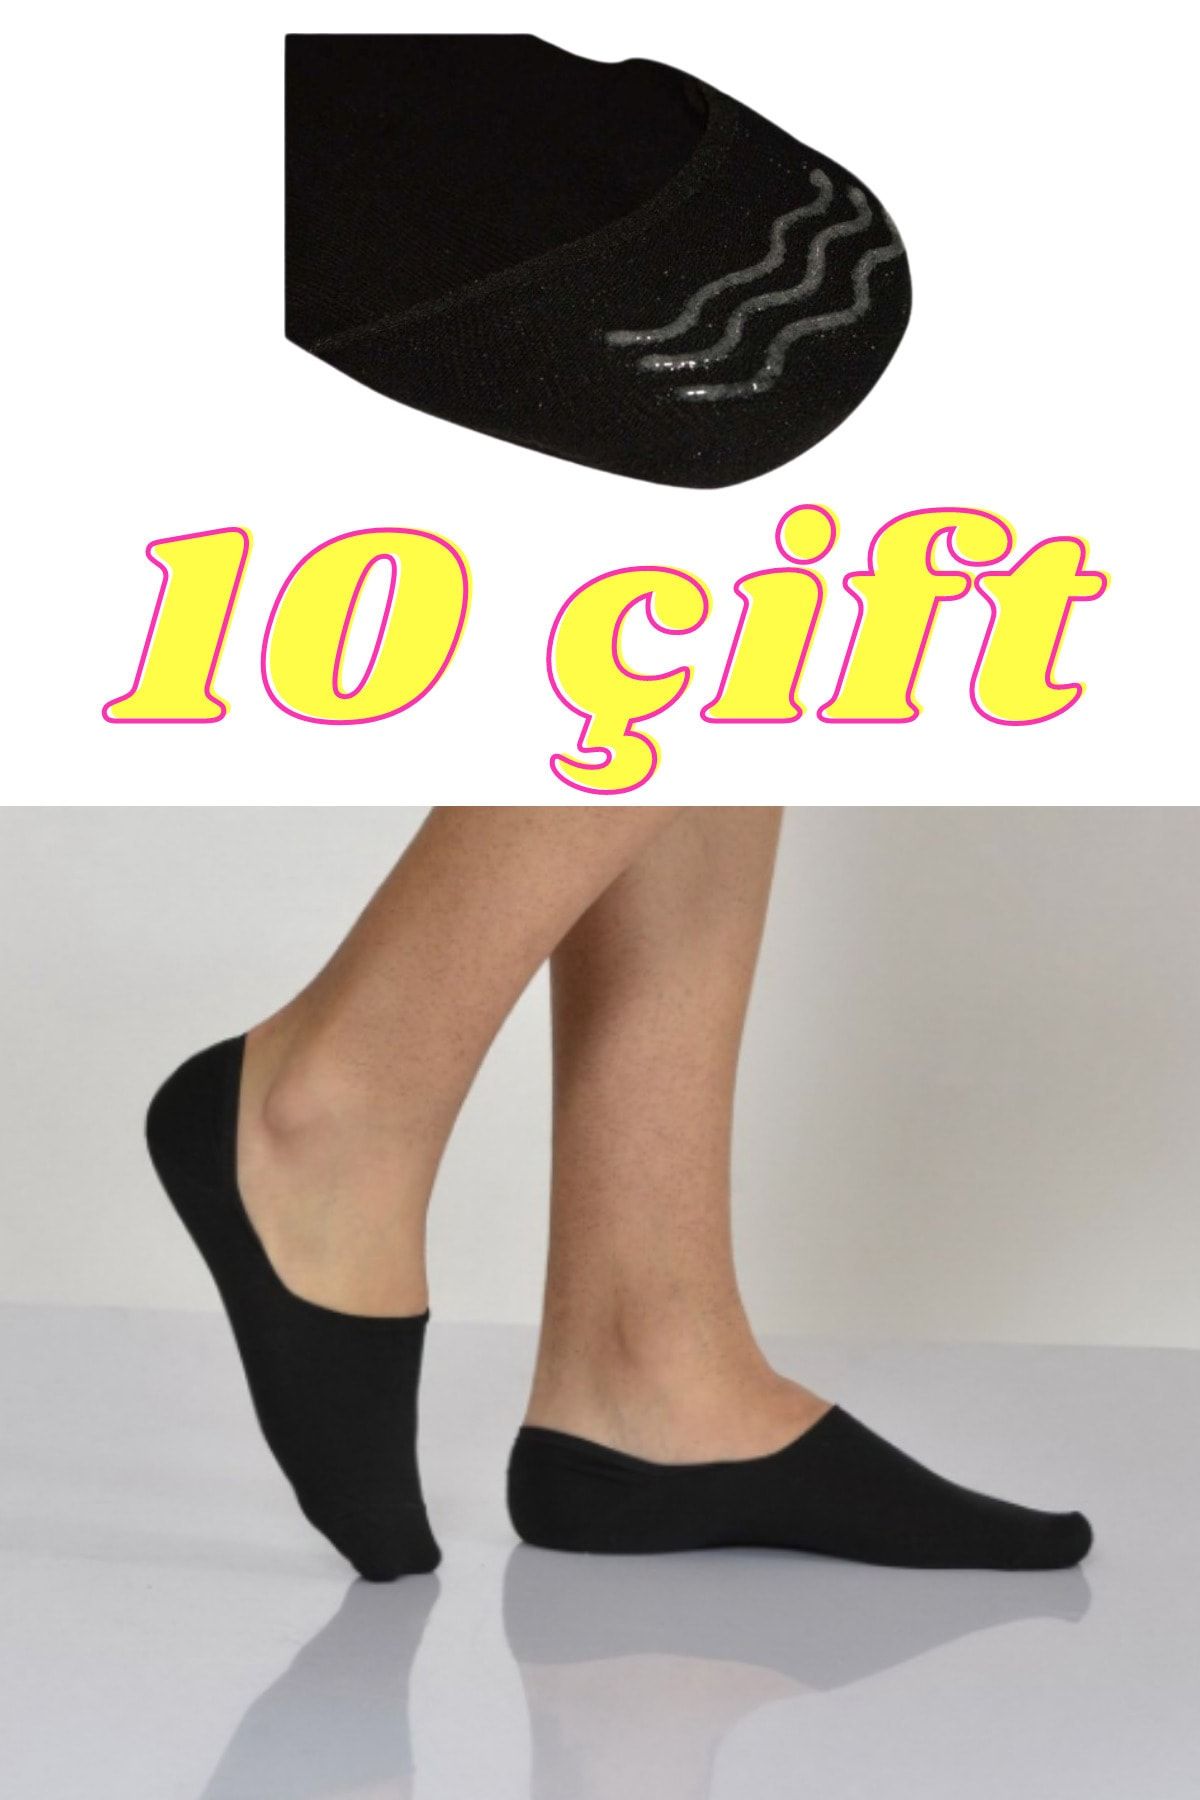 socksbox 10 Pairs Seamless Black Men's Silicone Ballerina Socks - Trendyol